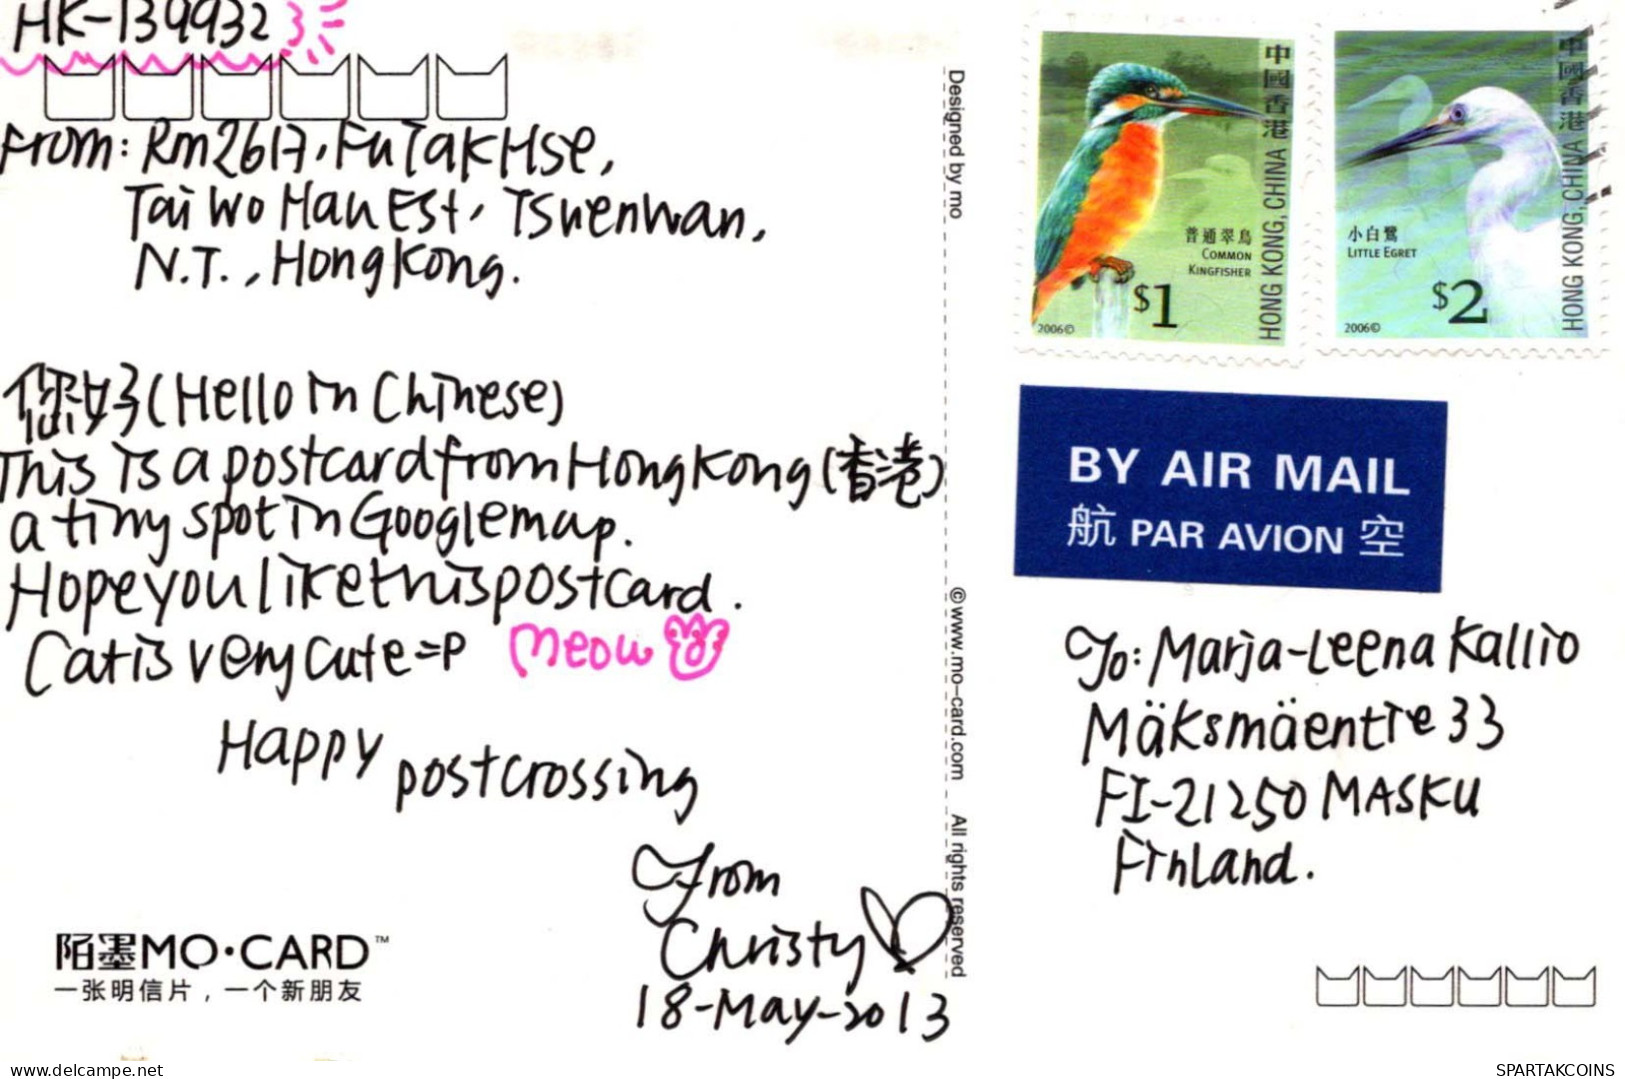 CAT Vintage Postcard CPSMPF #PKG919.A - Chats